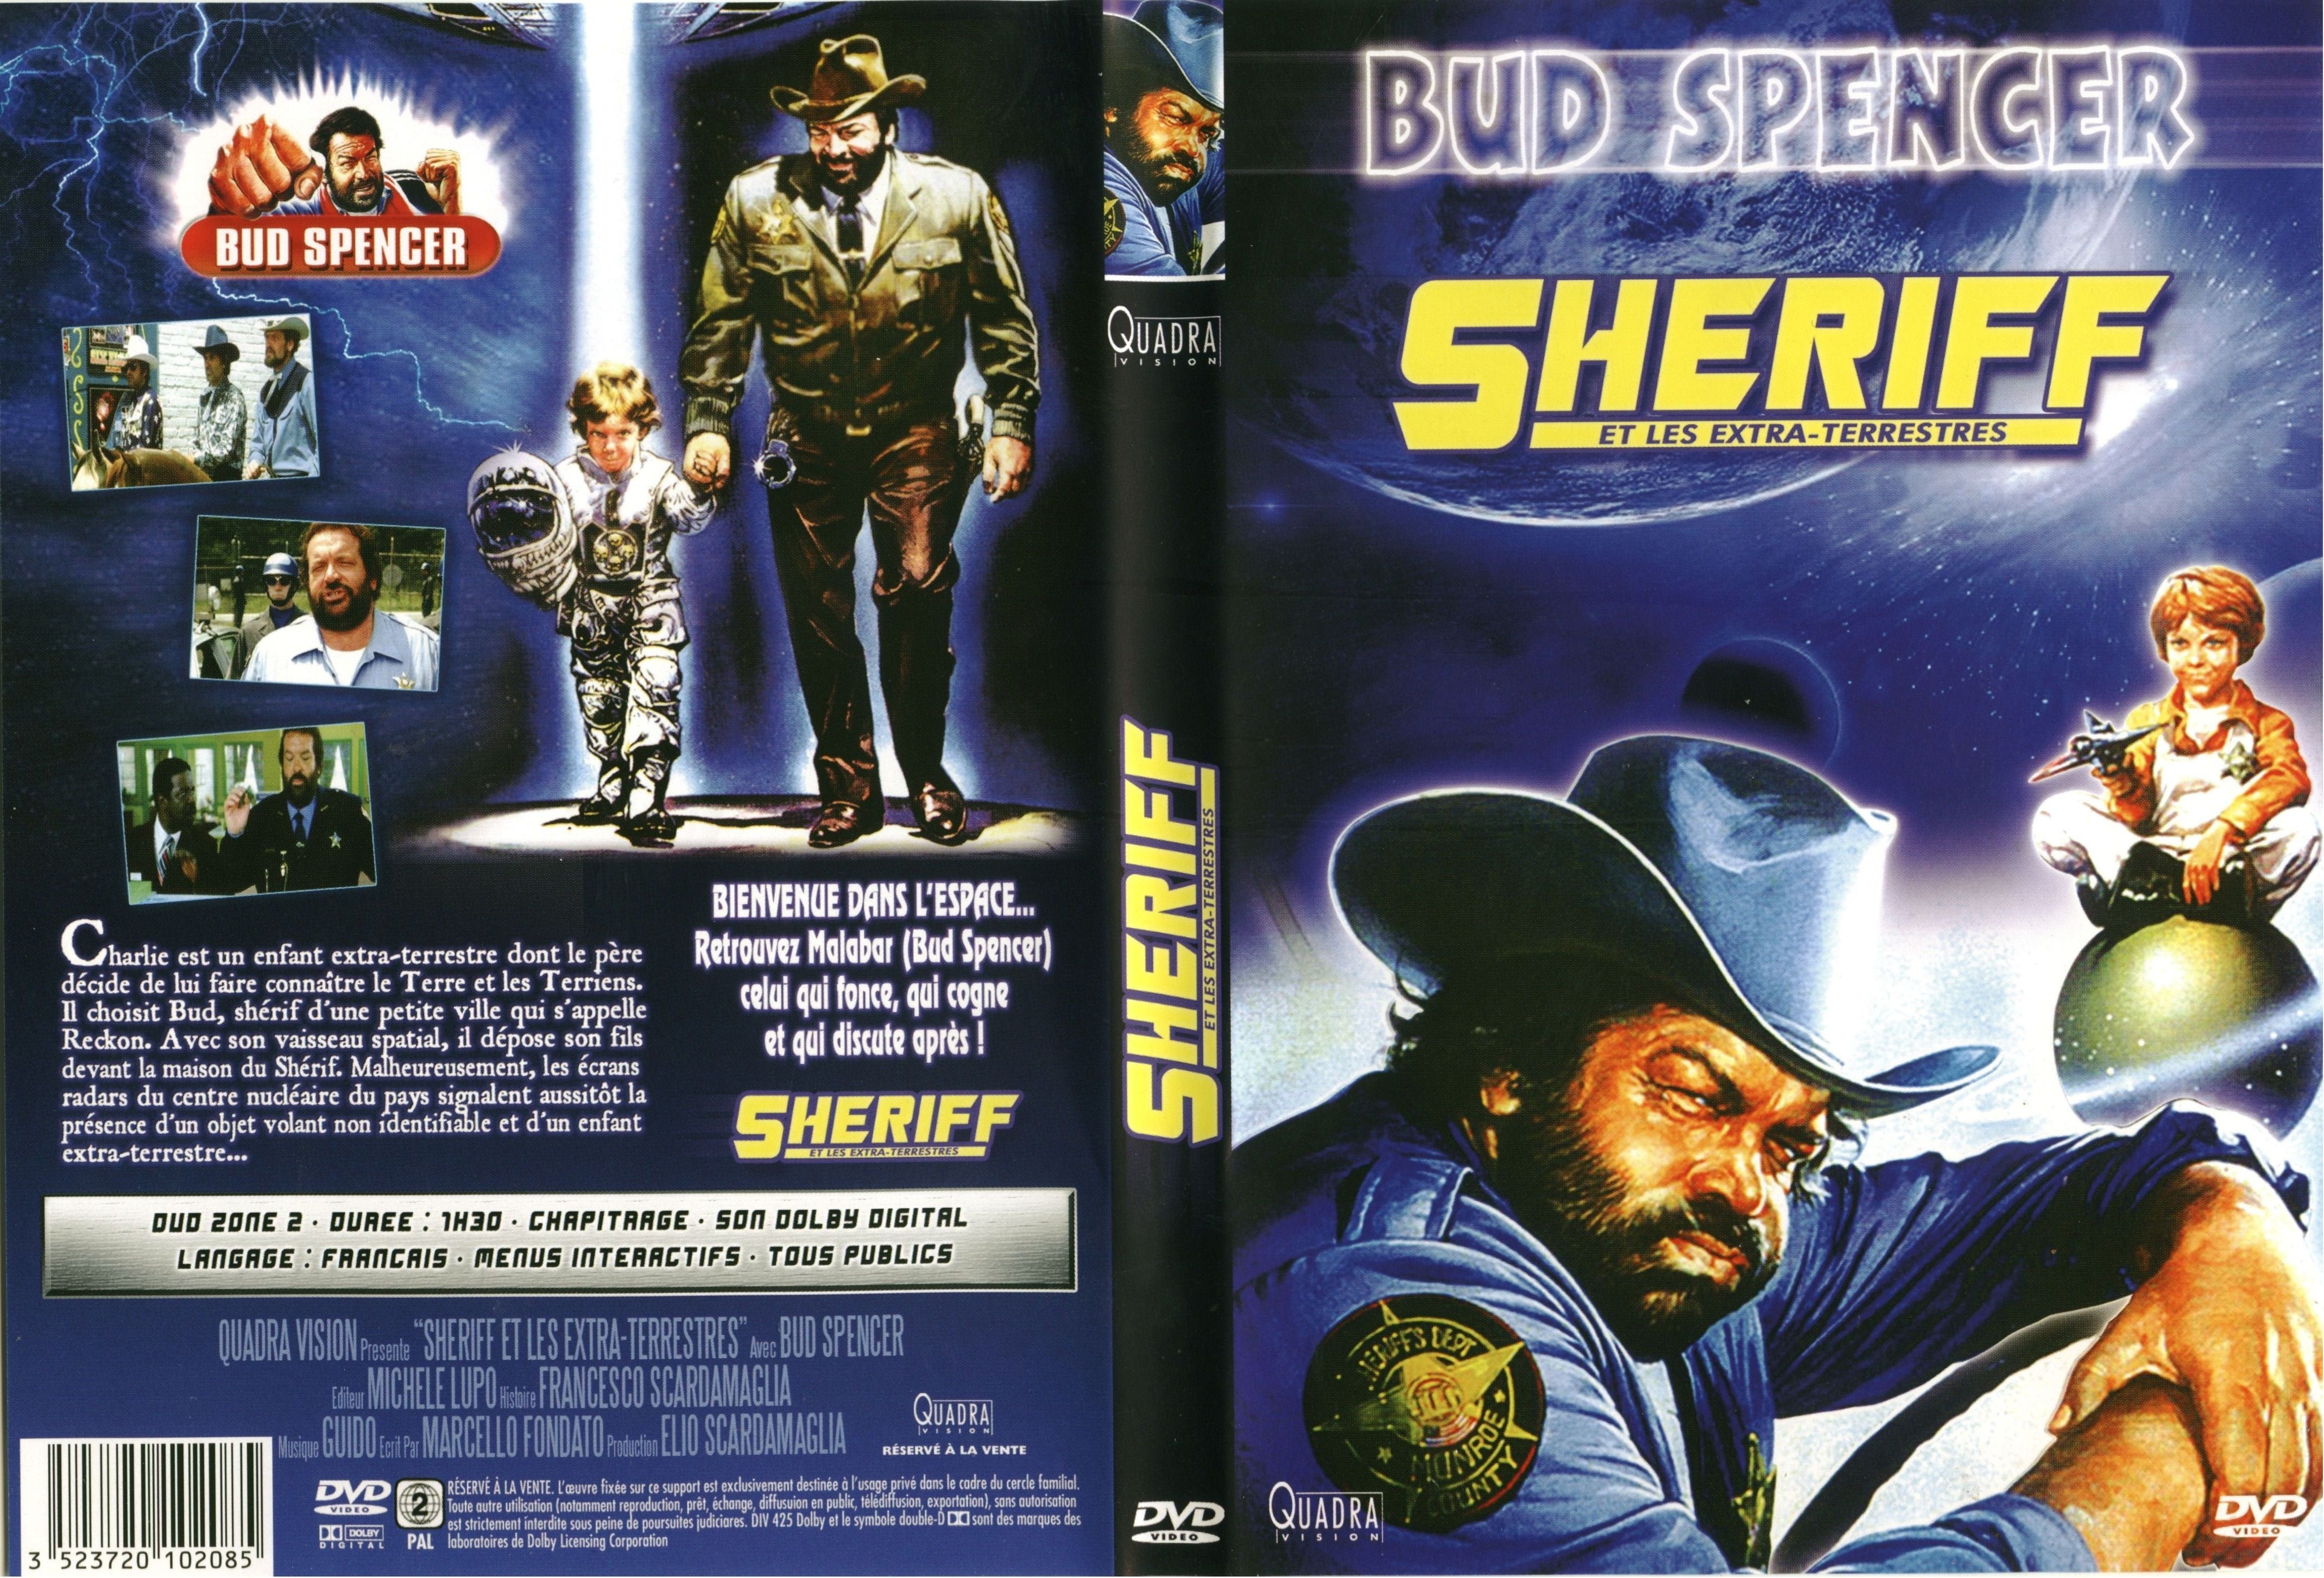 Jaquette DVD Sheriff et les extra-terrestres